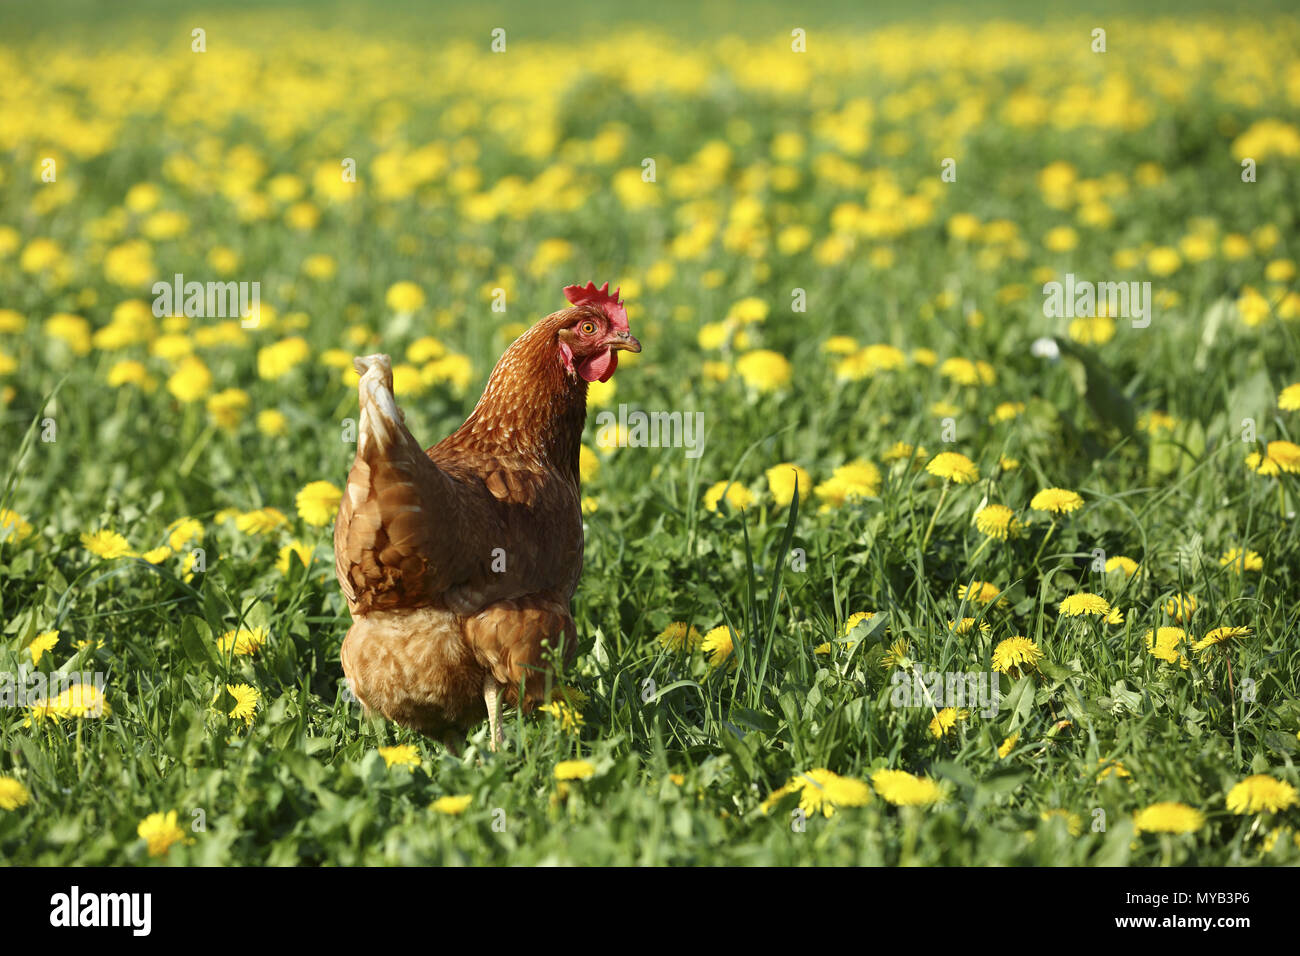 Poulet domestique. Poule dans une prairie avec des fleurs de pissenlit. Allemagne Banque D'Images